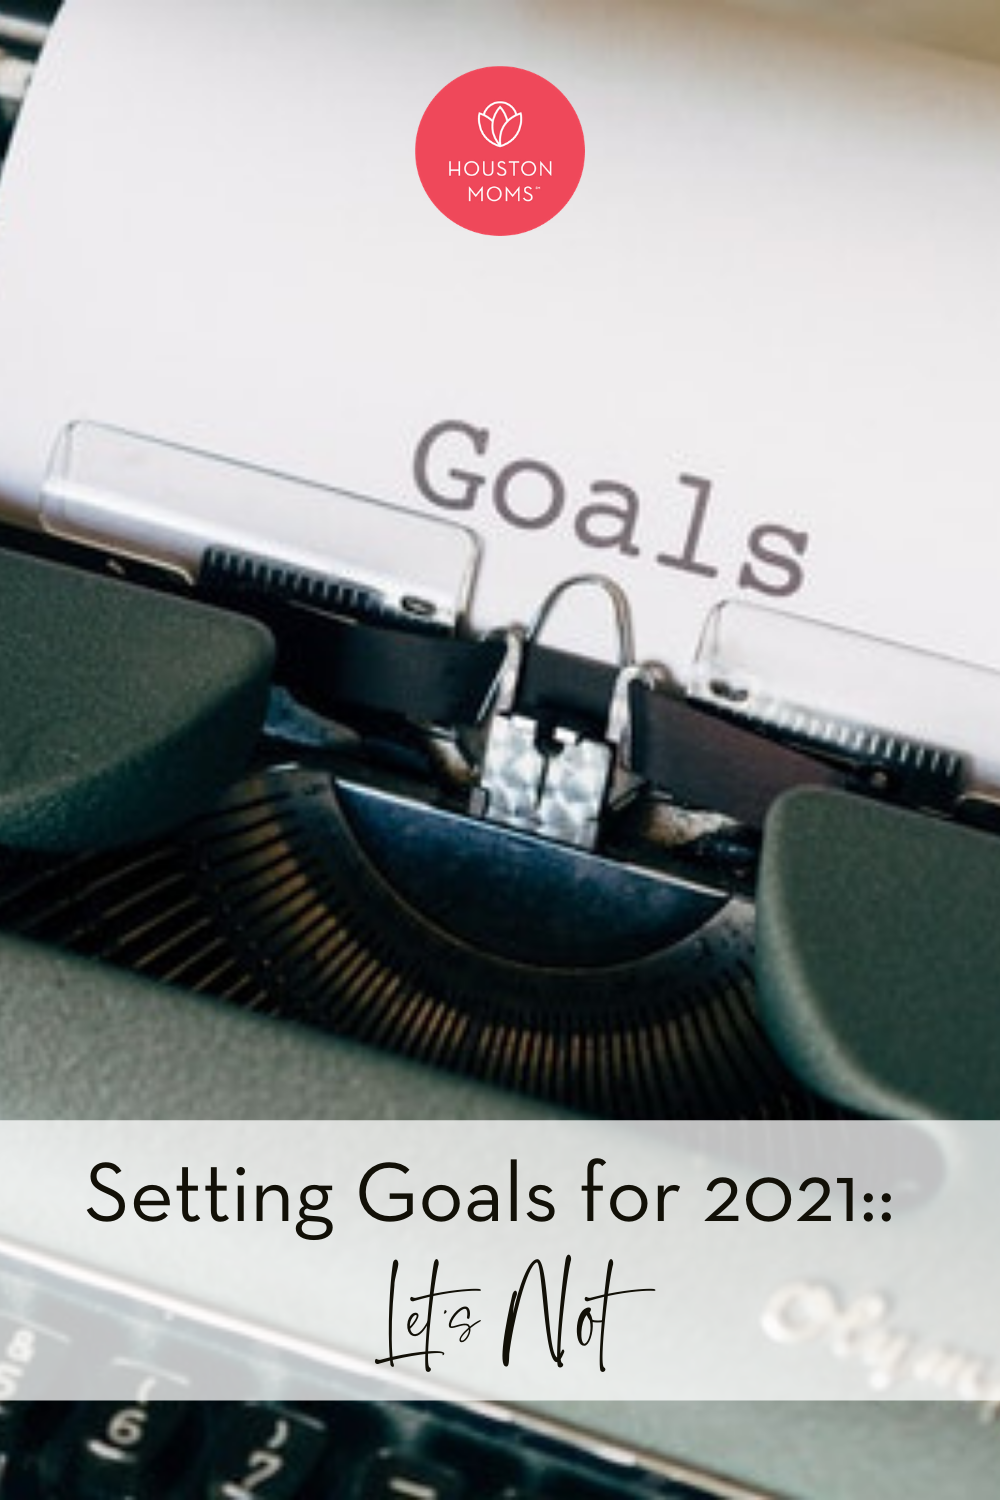 Houston Moms "Setting Goals for 2021:: Let's Not" #houstonmoms #houstonmomsblog #momsaroundhouston